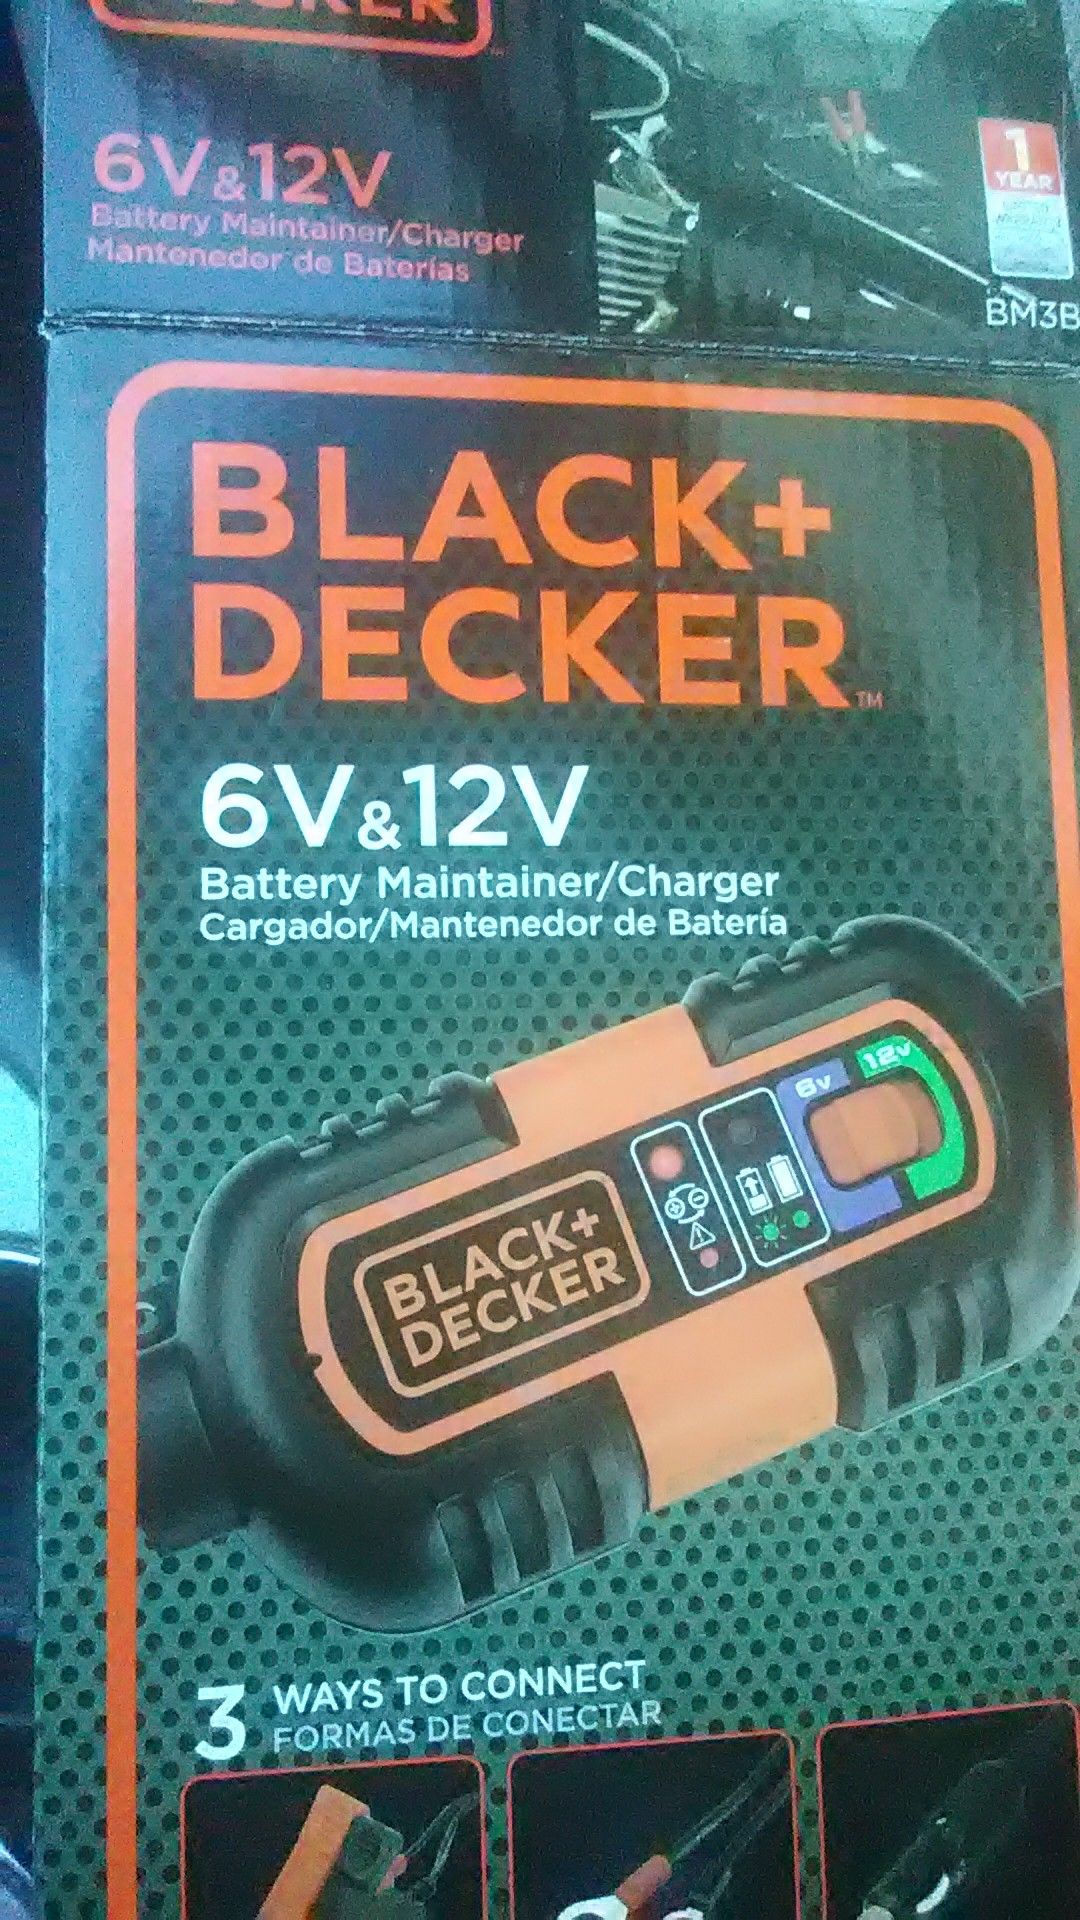 BLACK+DECKER BM3B 6V and 12V Battery Charger/Maintainer (BM3B)